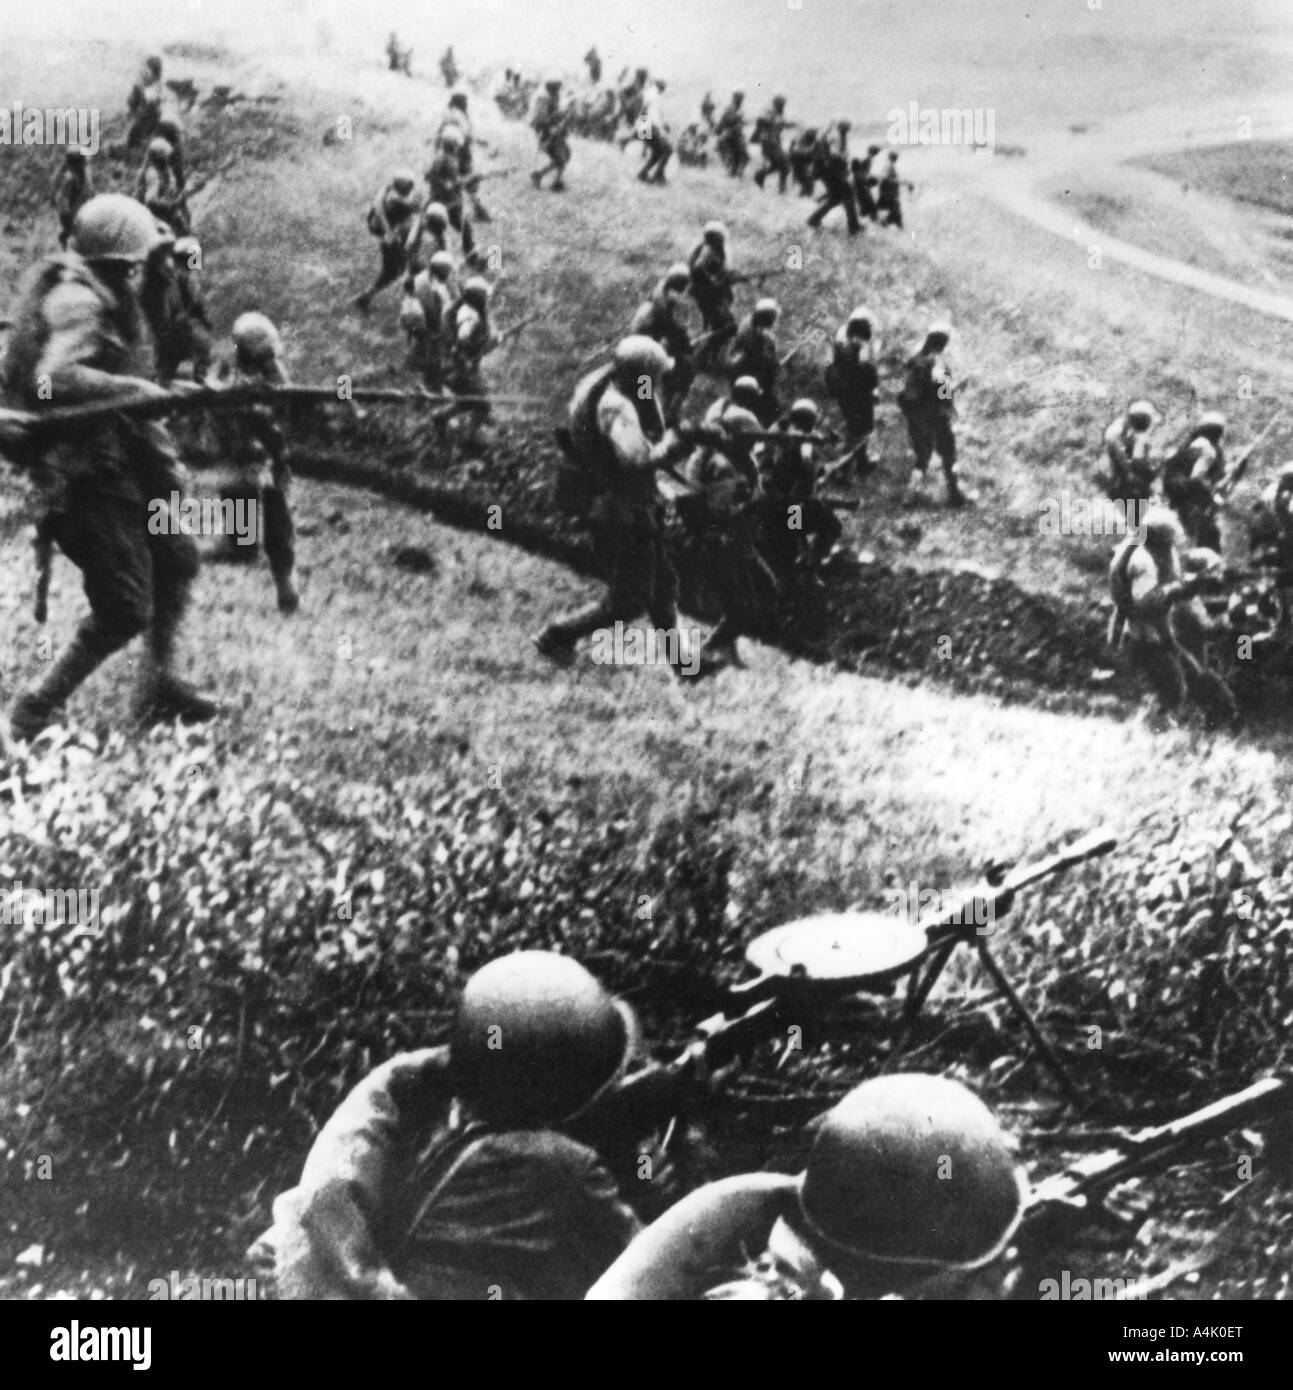 Нападение вов. Свирско-Петрозаводская операция 1944. ВОВ атака советских бойцов.